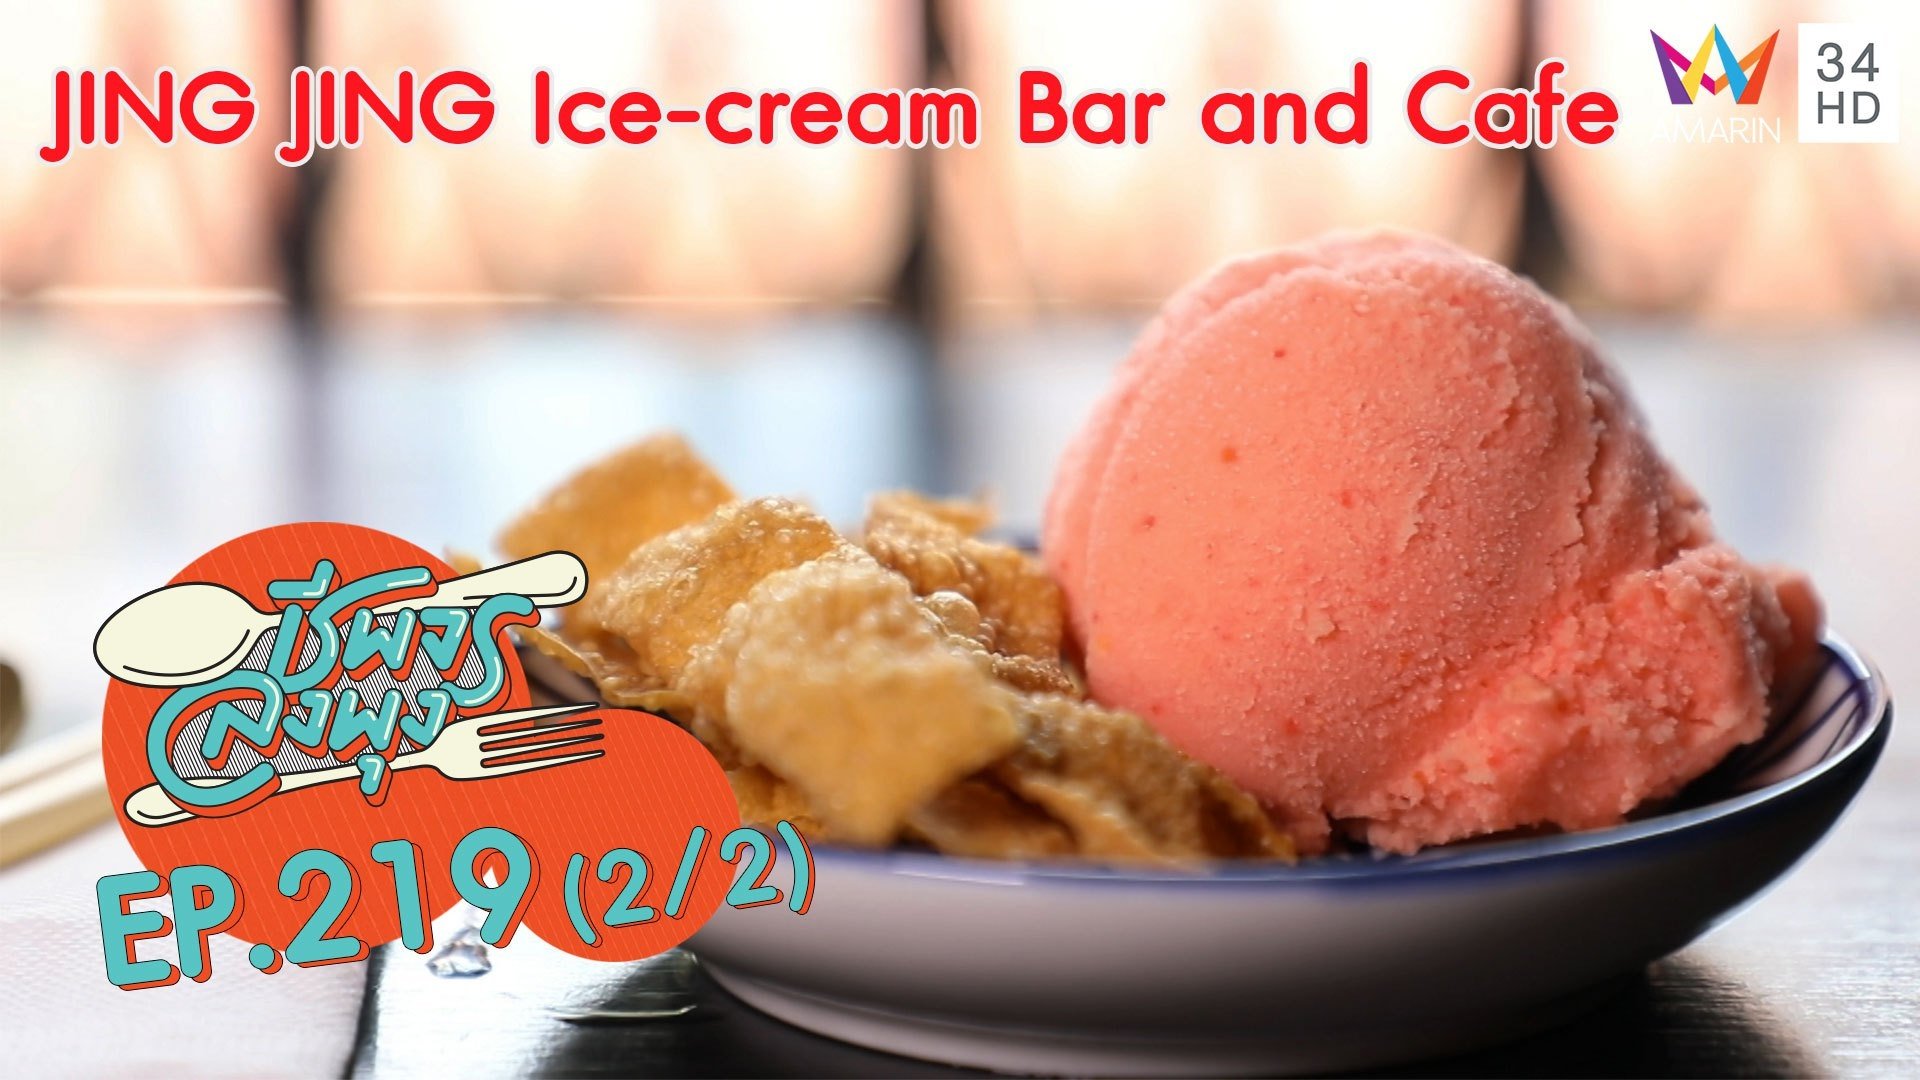 ไอศกรีมสุดเก๋ @'ร้าน JING JING Ice-cream Bar and Cafe'  | ชีพจรลงพุง | 26 เม.ย. 63 (2/2) | AMARIN TVHD34